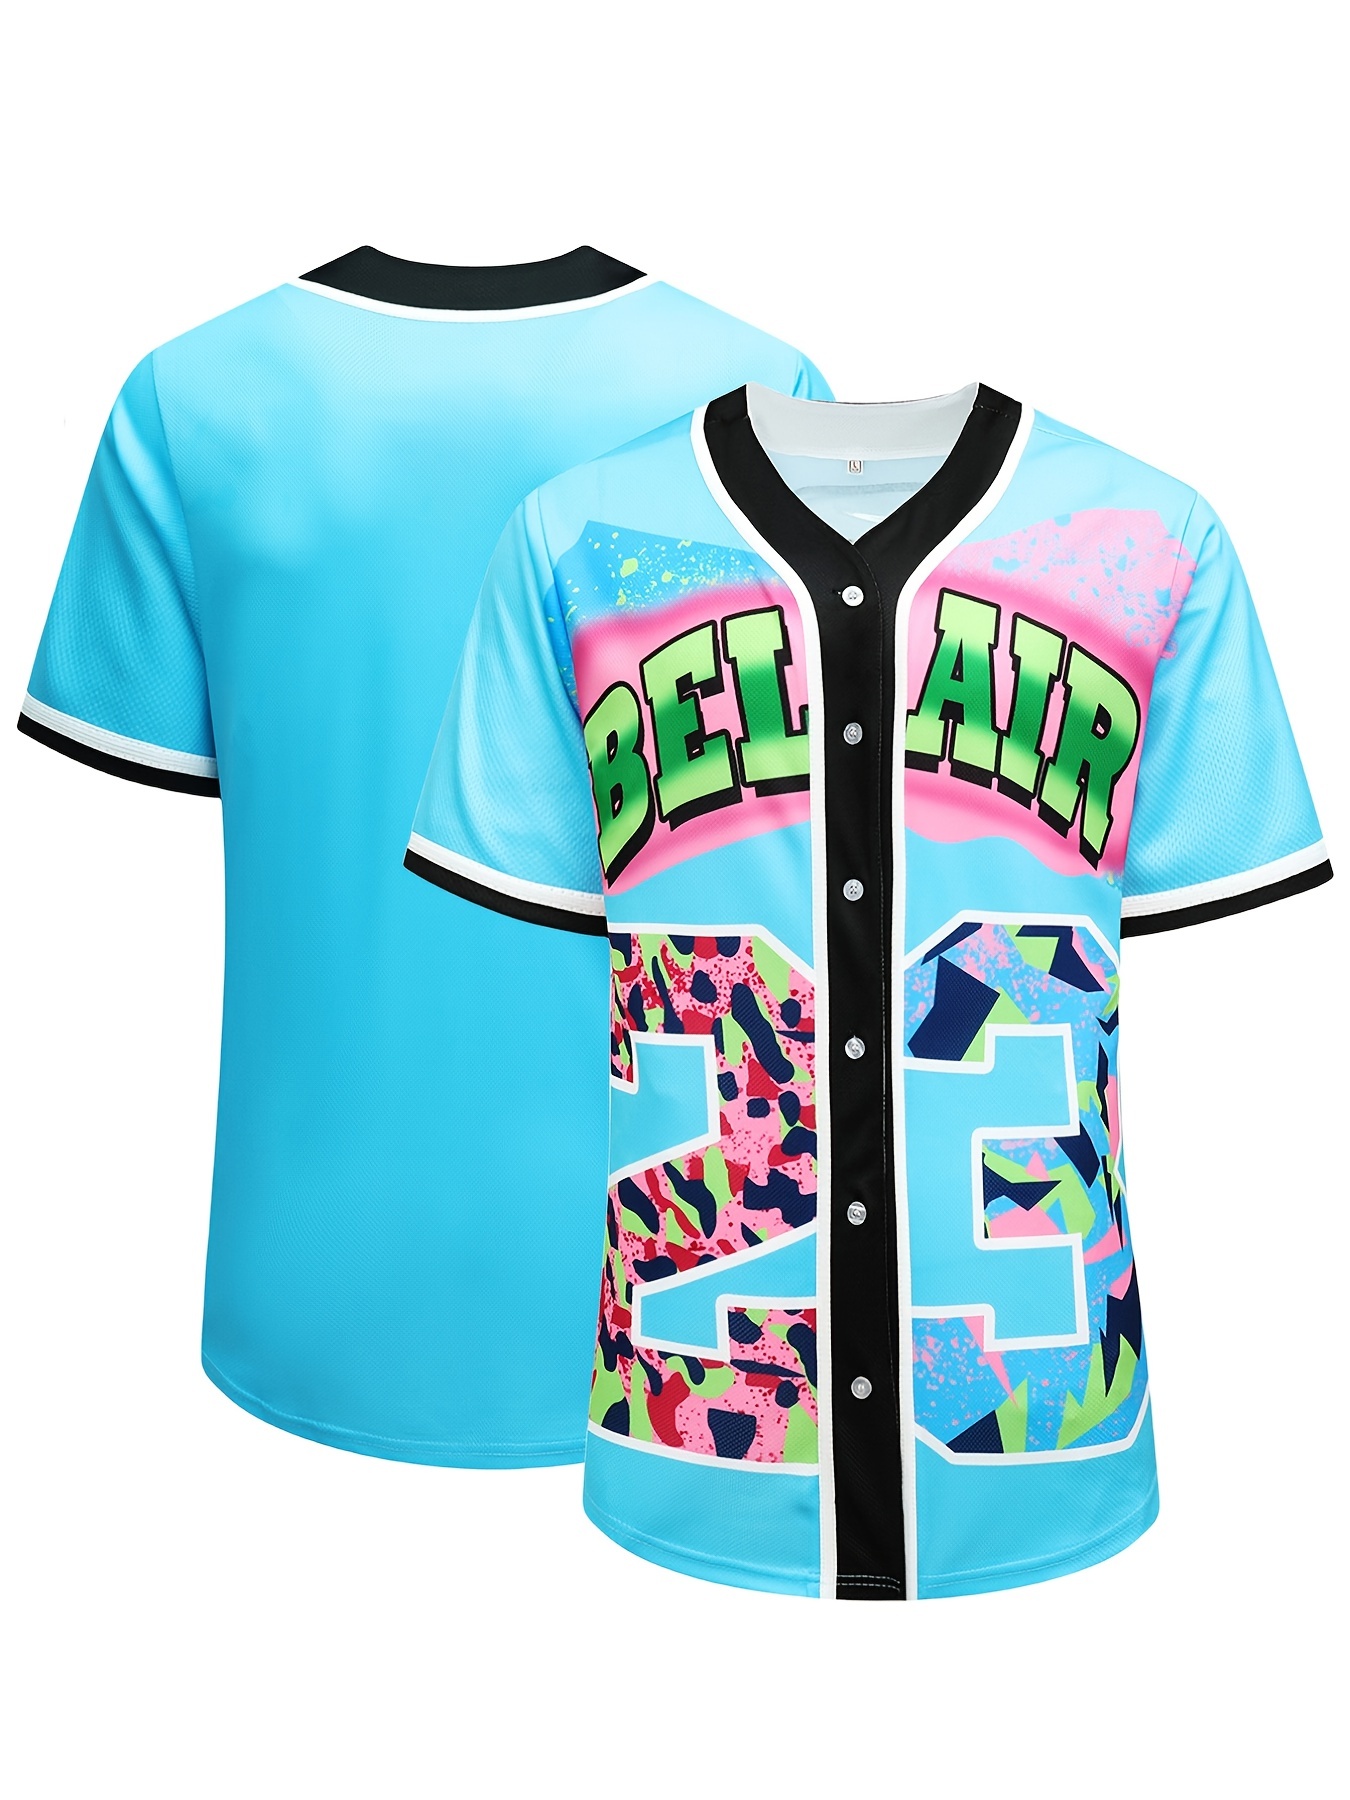 Camisetas de béisbol #99 para hombre, camisetas de béisbol para mujer, ropa  de béisbol de hip hop de los años 90 para fiesta